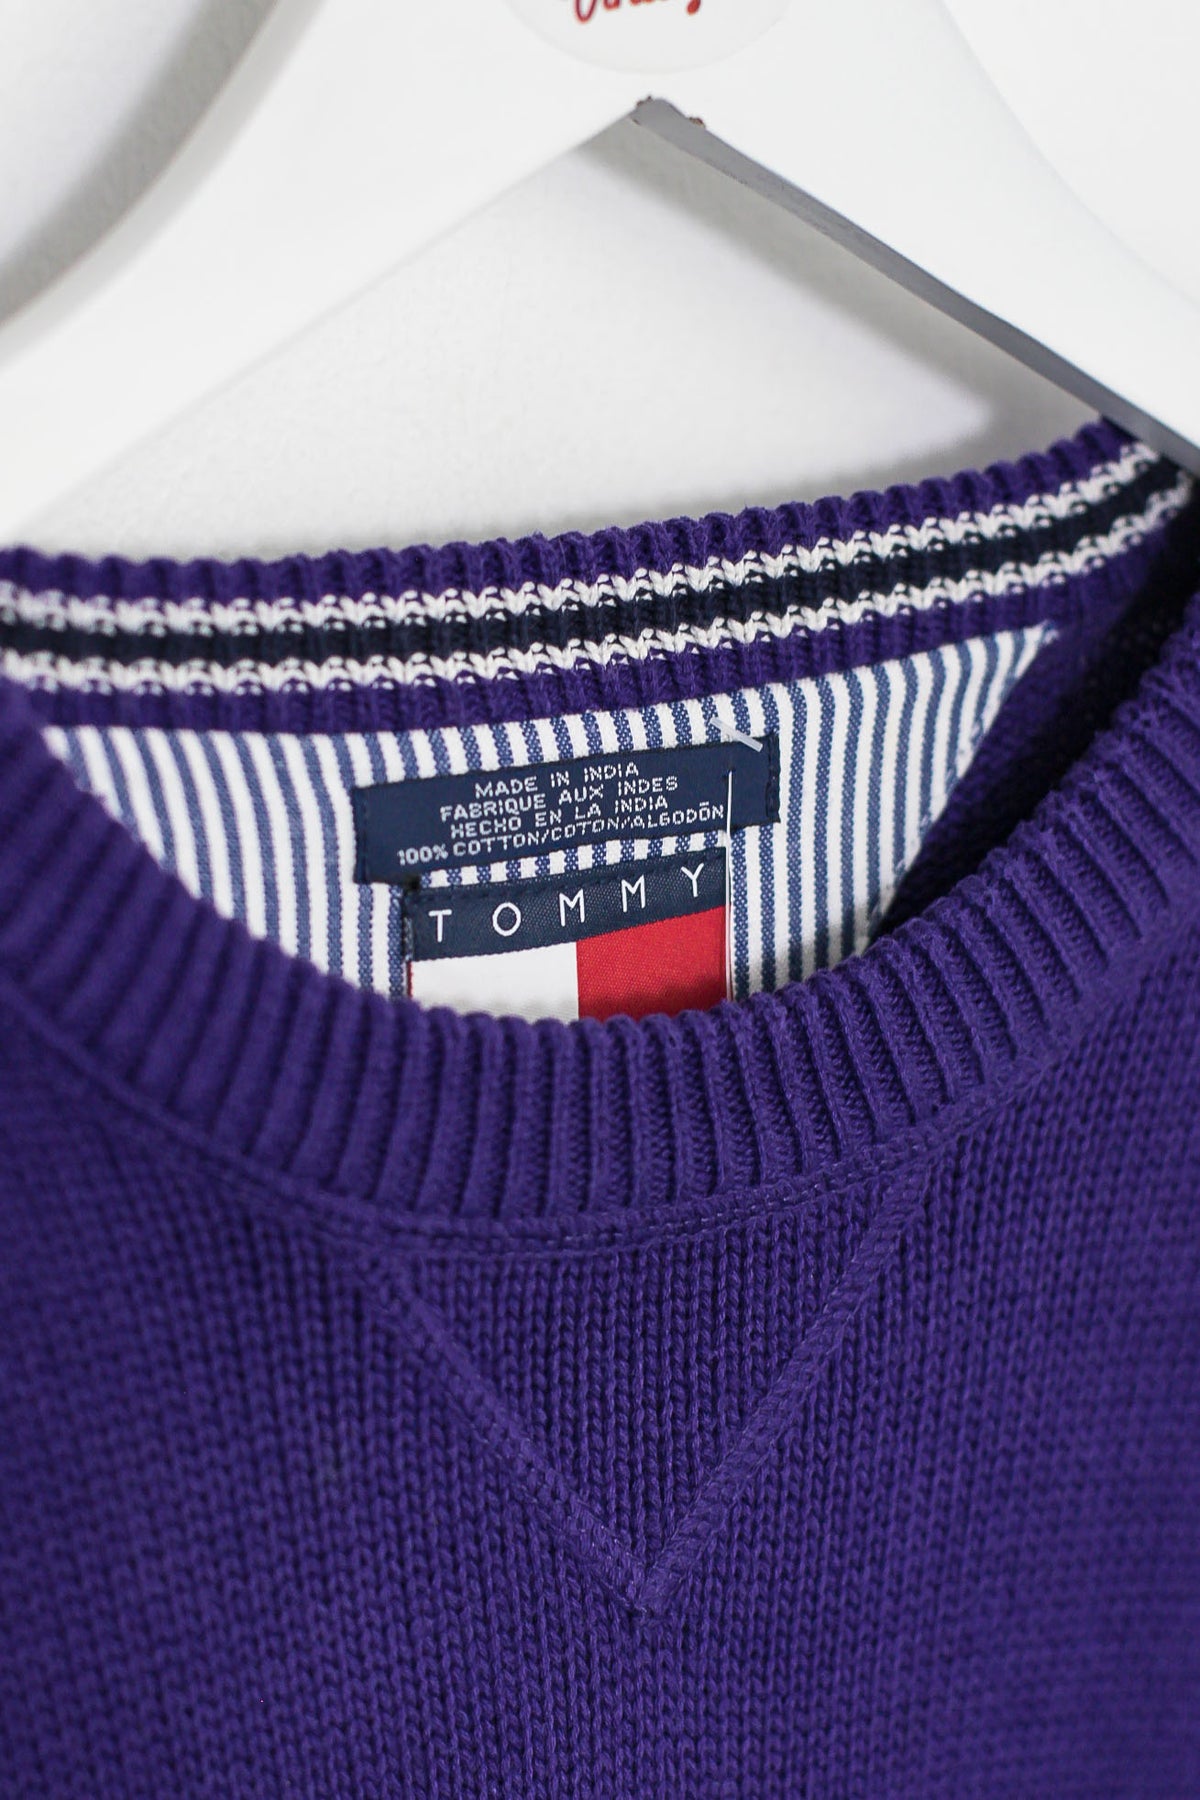 90s Tommy Hilfiger Knit Sweatshirt (XL)